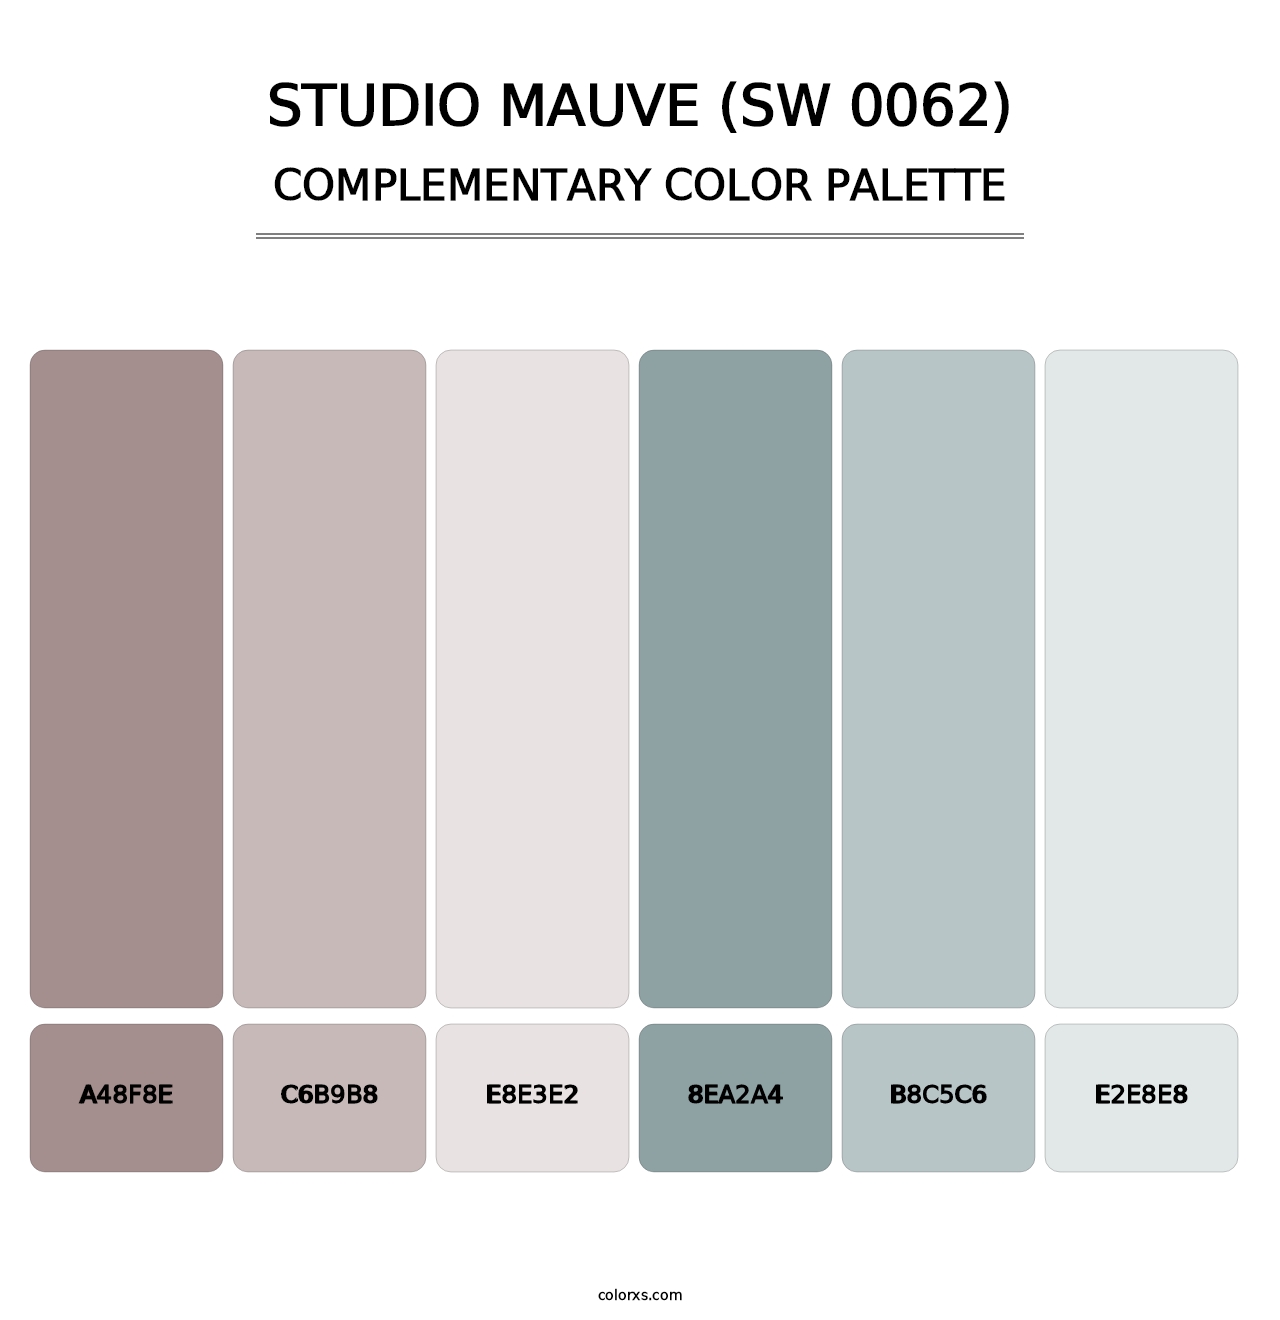 Studio Mauve (SW 0062) - Complementary Color Palette